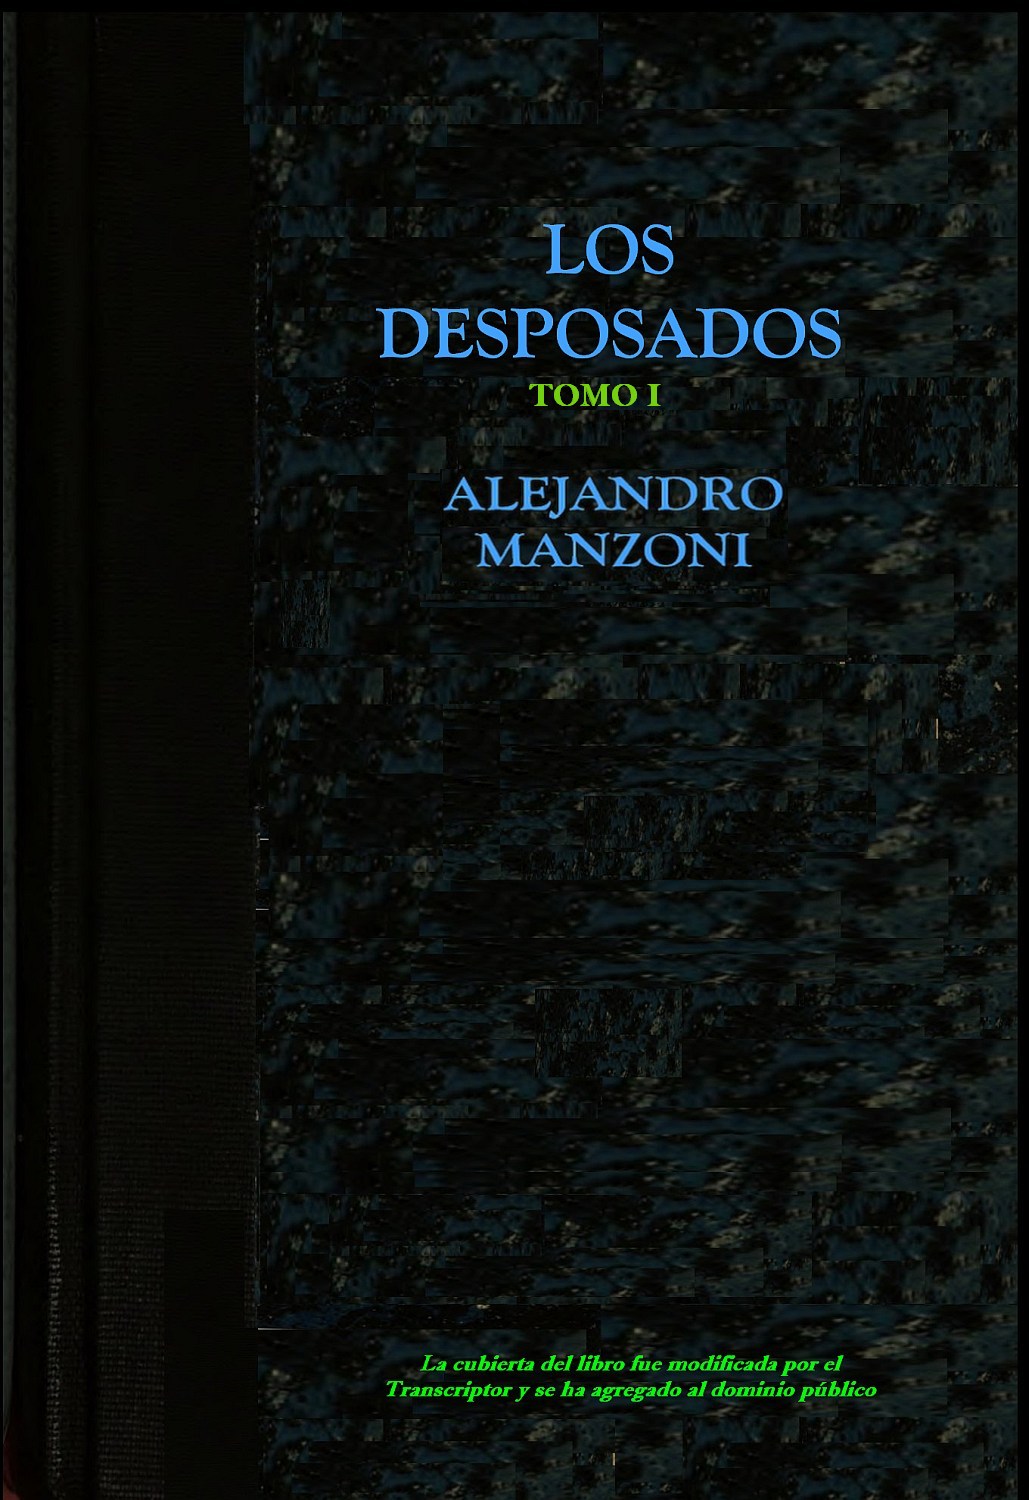 Los desposados, by Alejandro Manzoni—A Project Gutenberg eBook